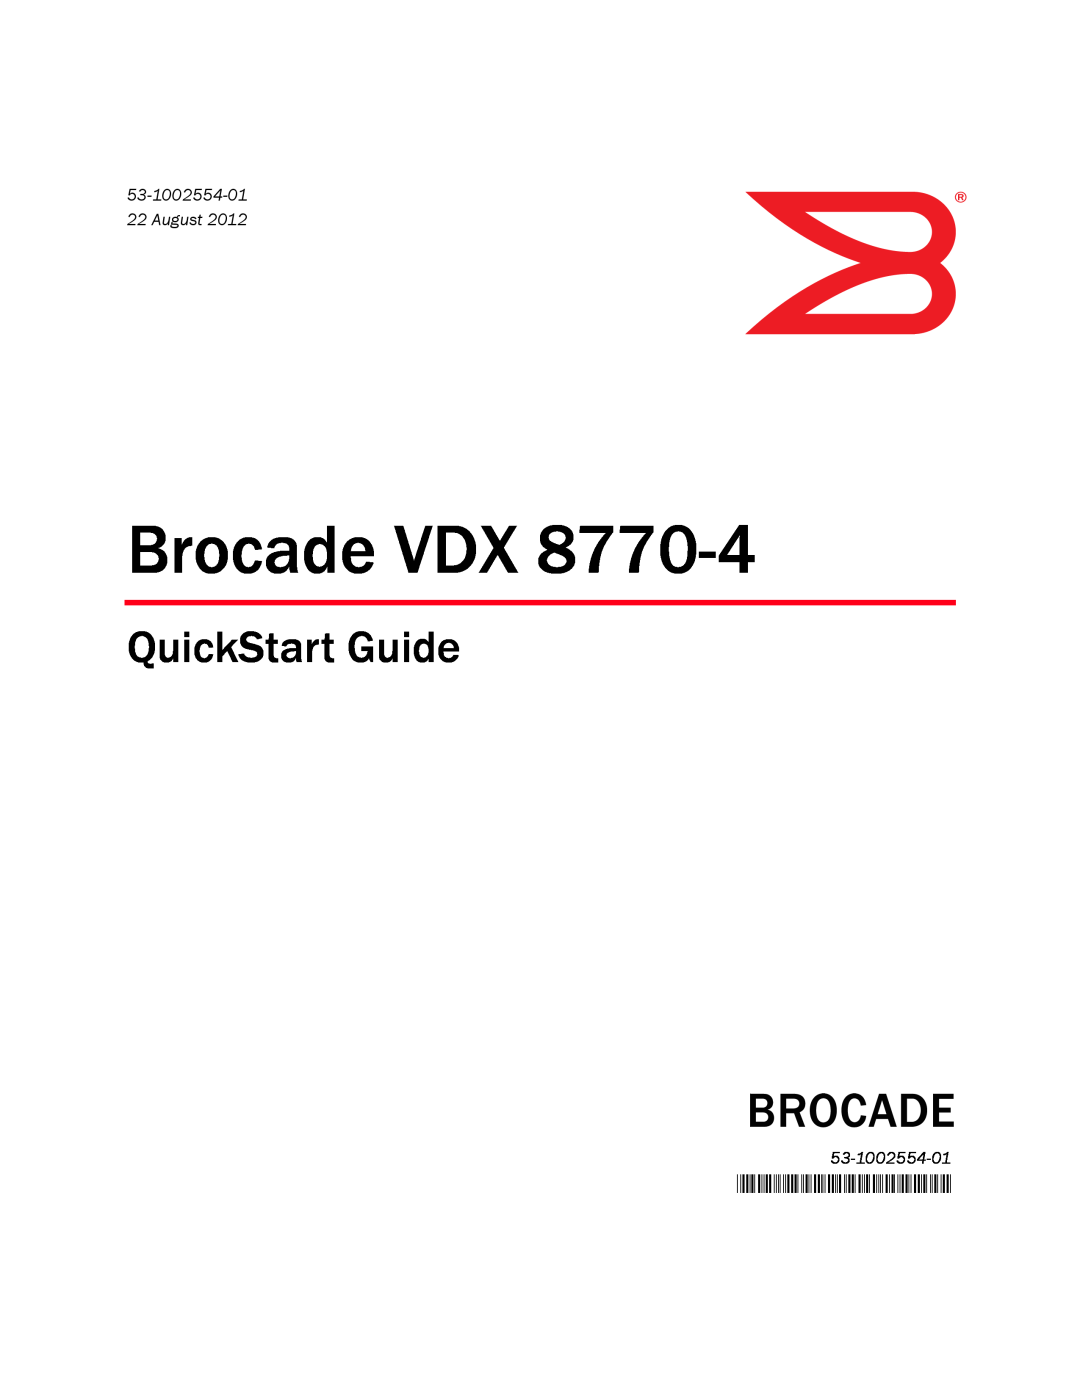 Brocade Communications Systems 8770-4 quick start 53-1002554-01, August, Brocade VDX, QuickStart Guide 